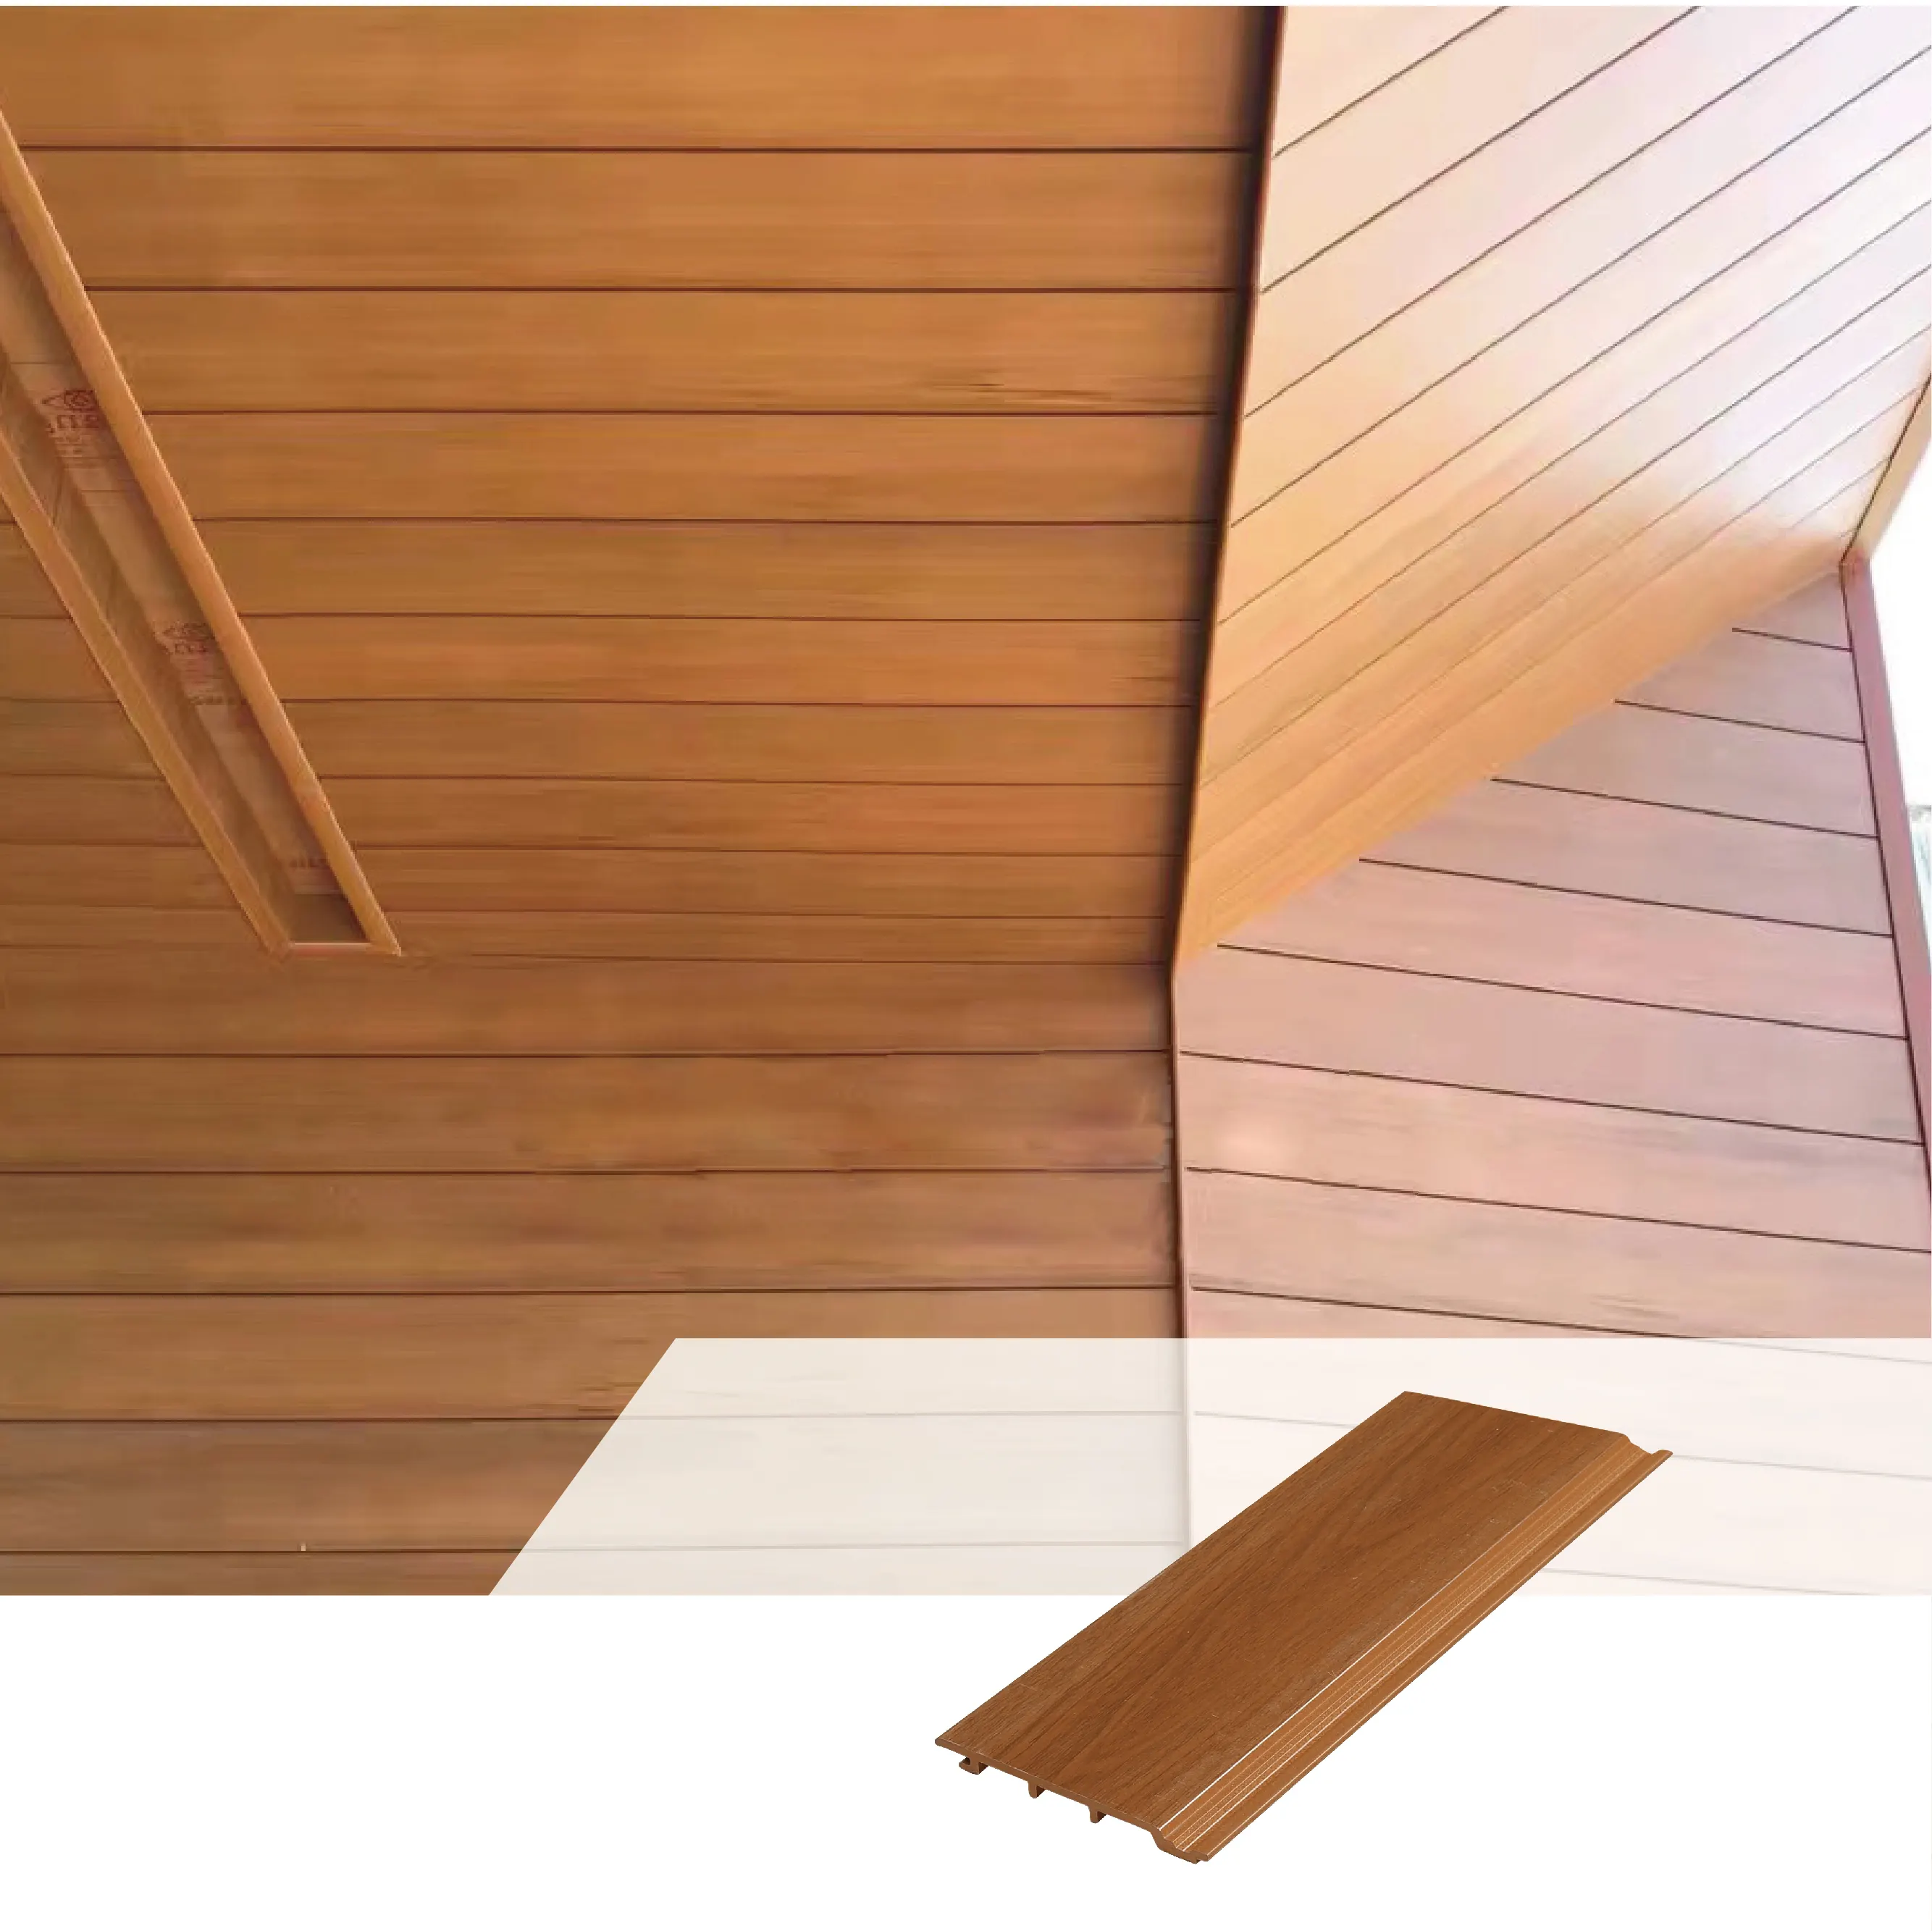 فوشان الخشب البلاستيك PVC لوحة حائط مركبة ، WPC بلاط السقف الداخلي/الخارجي الديكور 120*12 مللي متر مواد بناء